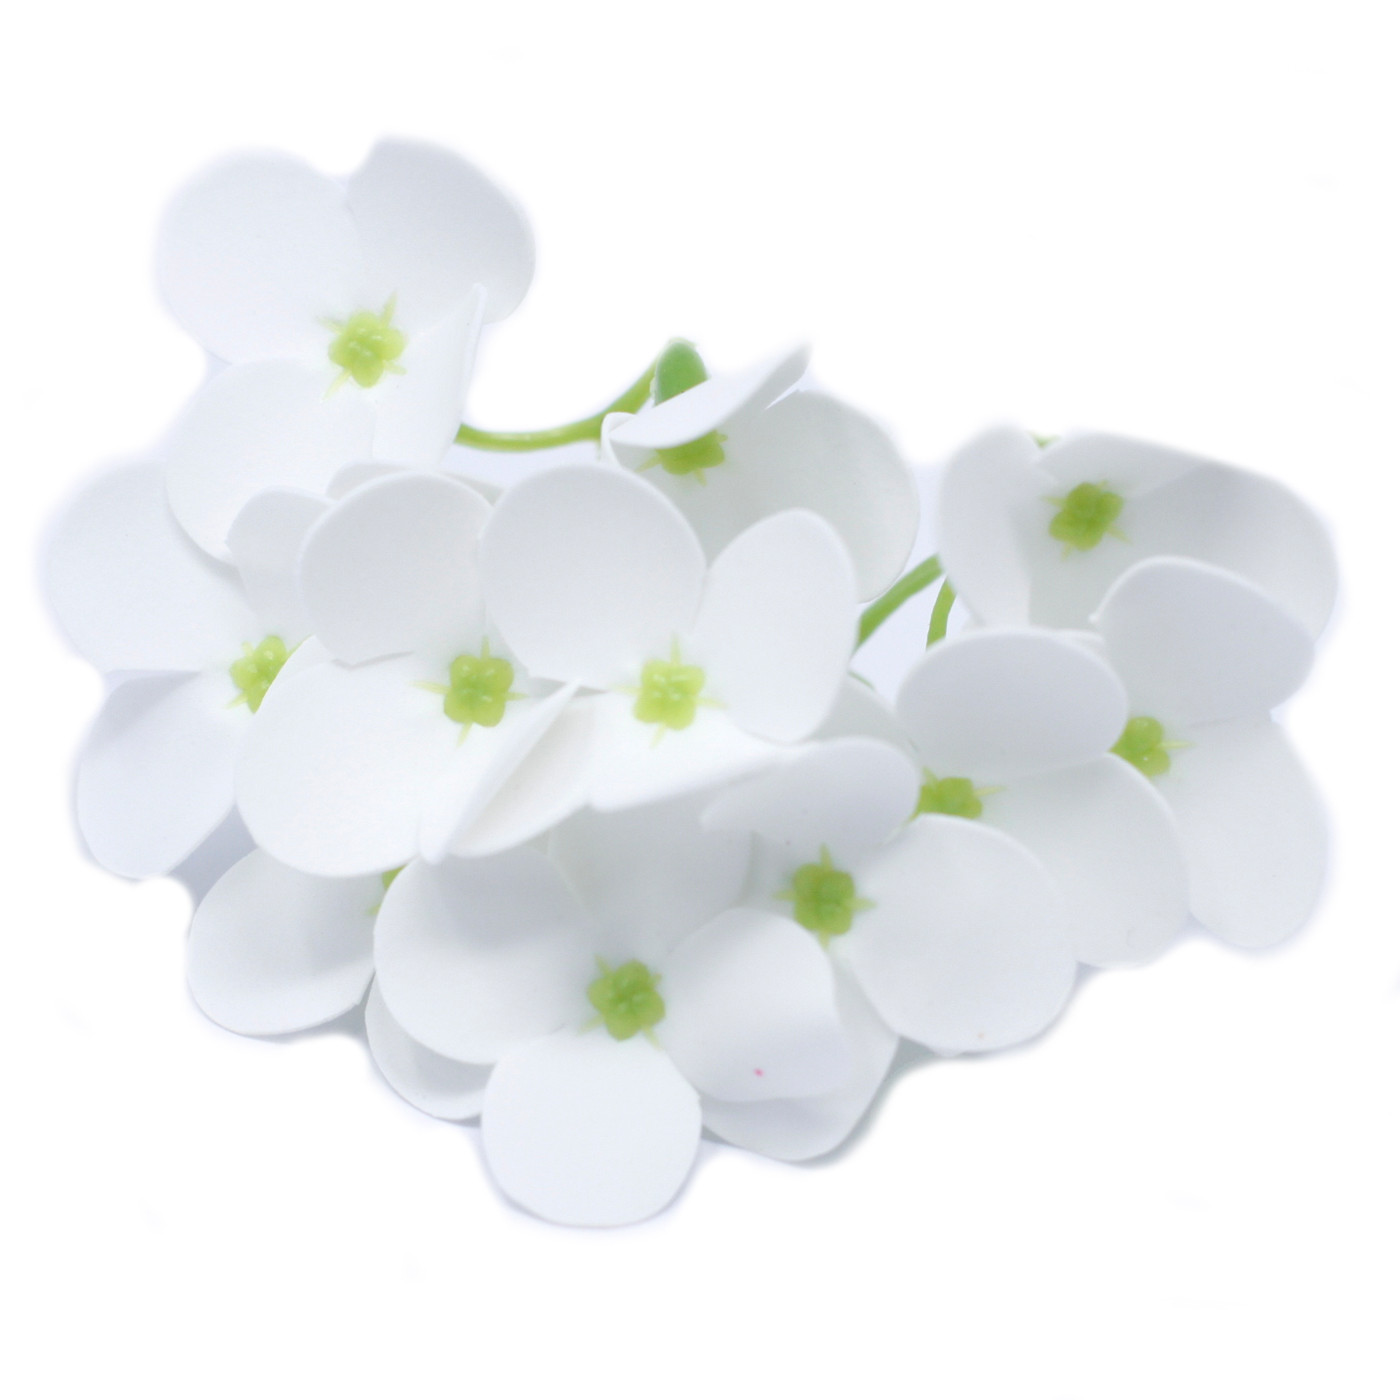 Mýdlové květy - Hyacint - Bílý (36 ks)